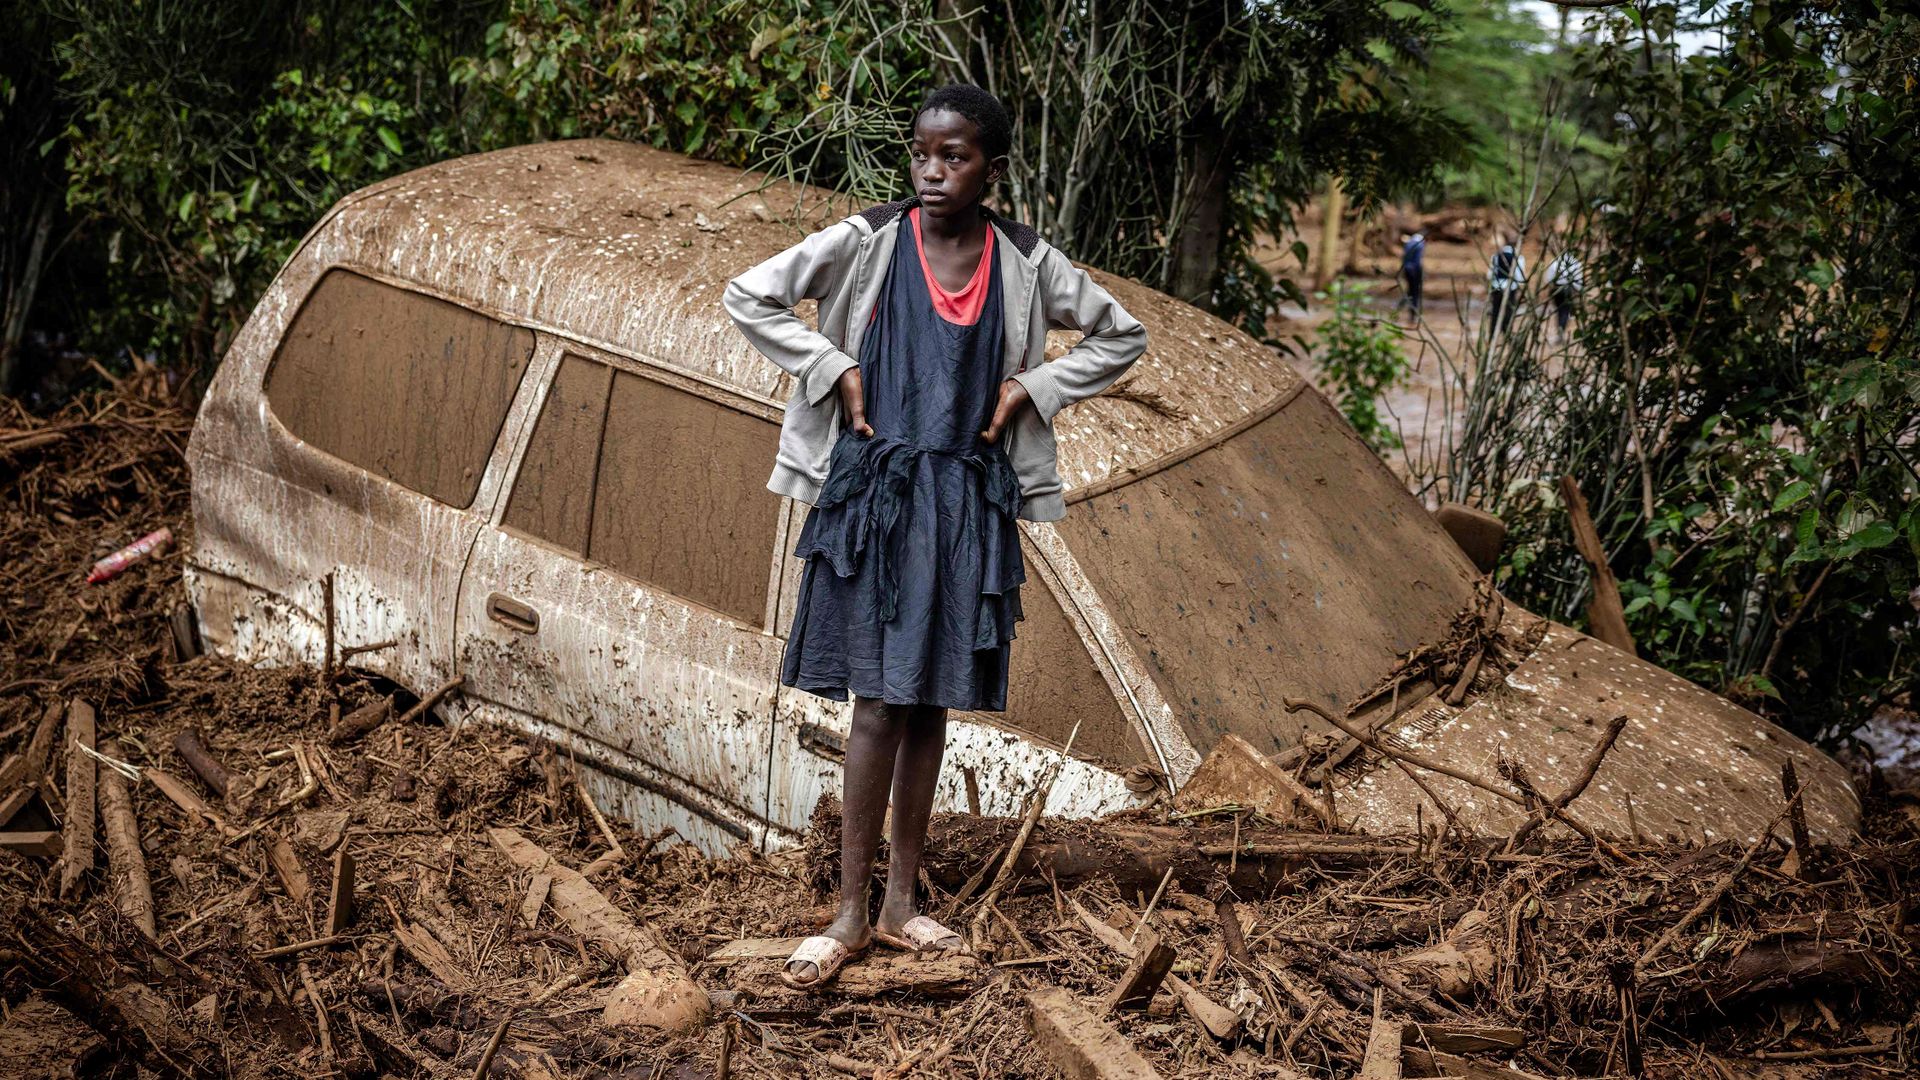 klima-krise in afrika: »der globale norden schuldet uns dieses geld«